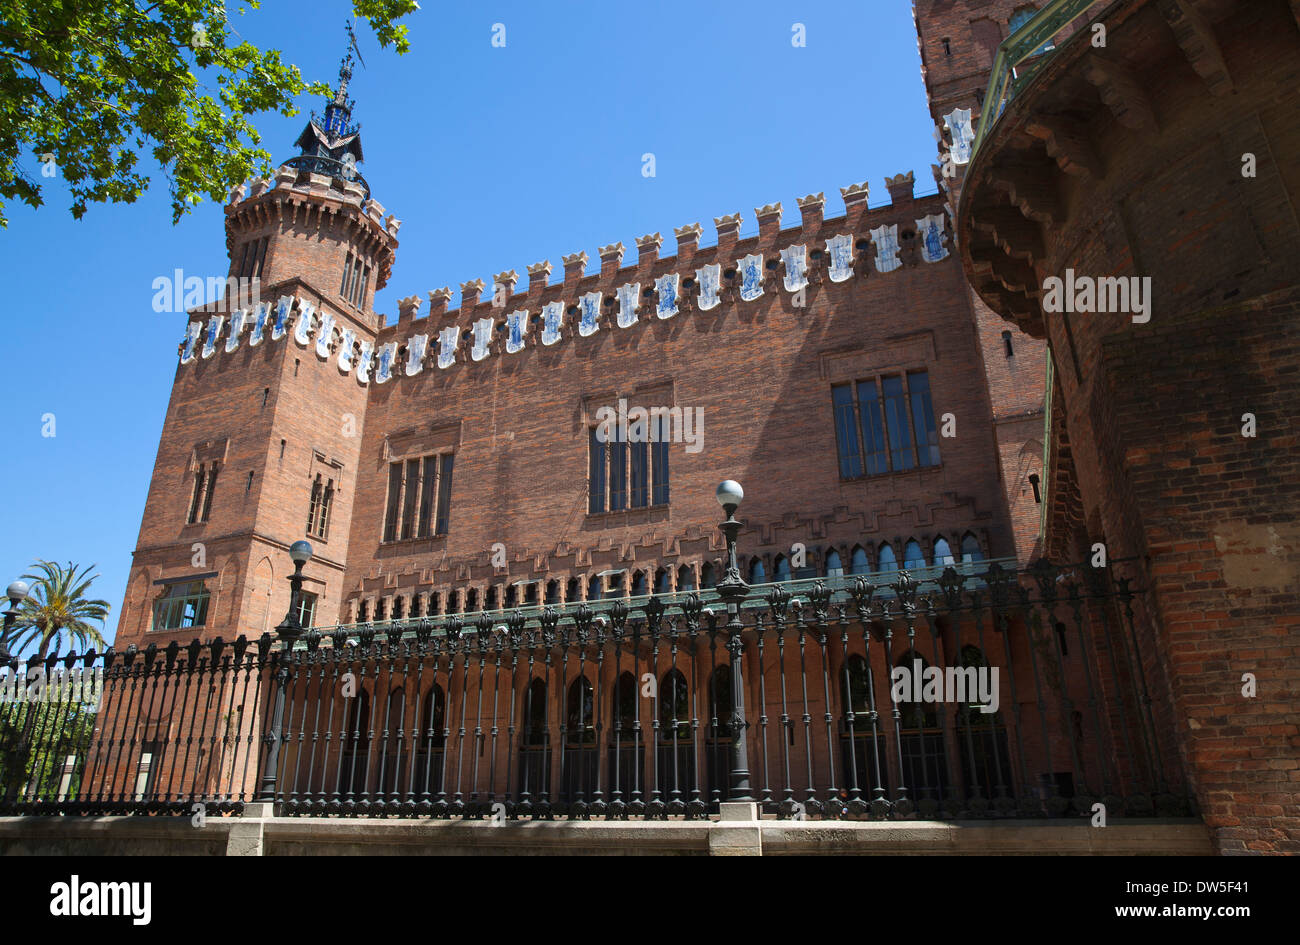 Spanien, Katalonien, Barcelona, Castell Dels Tres Dragons für die 1888 Weltausstellung jetzt Natural Science Museum gebaut. Stockfoto